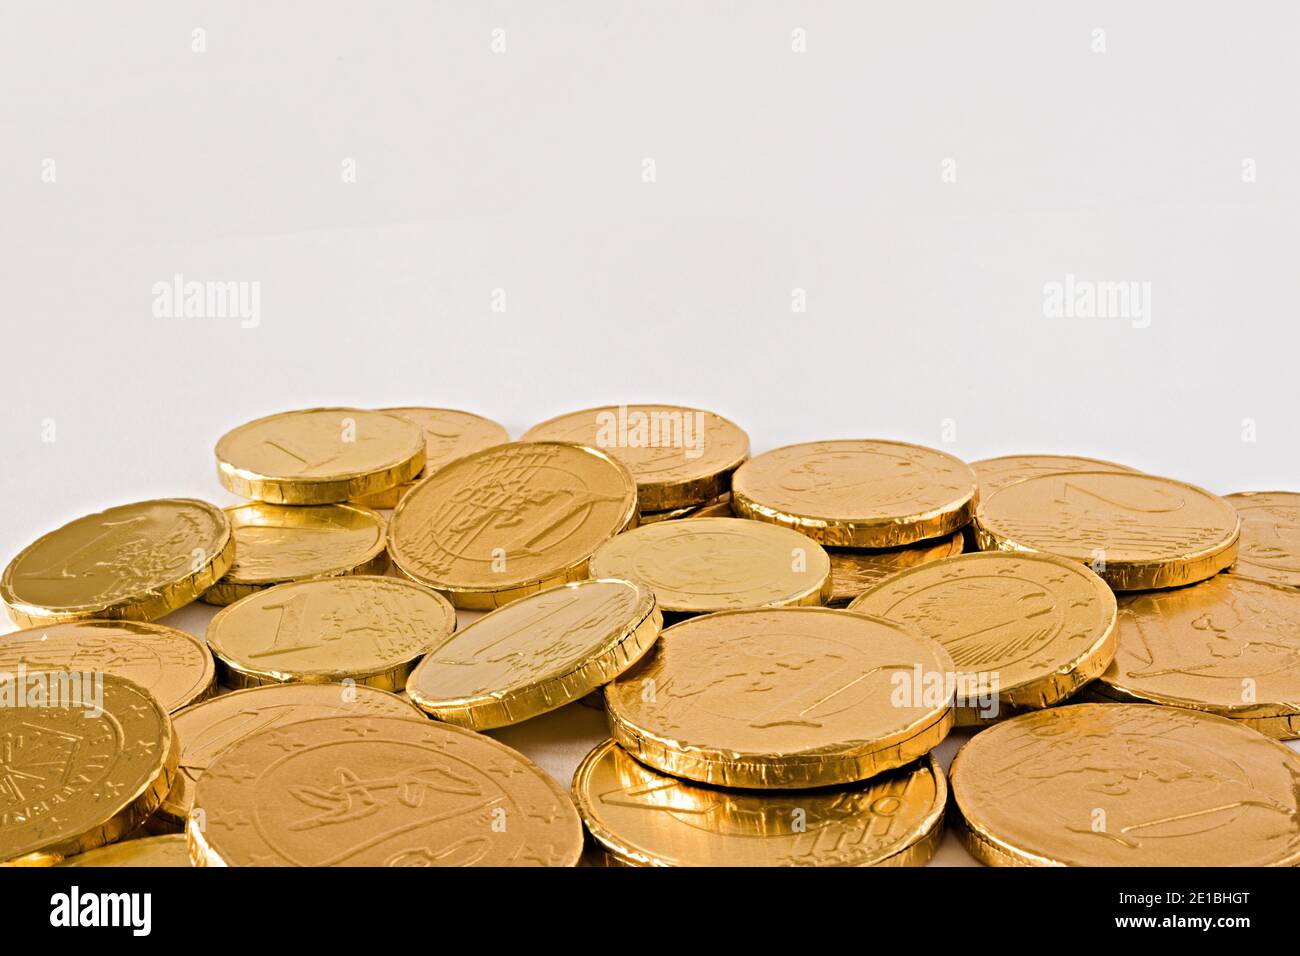 monete di cioccolato mucchio sparpagliate altra vista Foto de stock